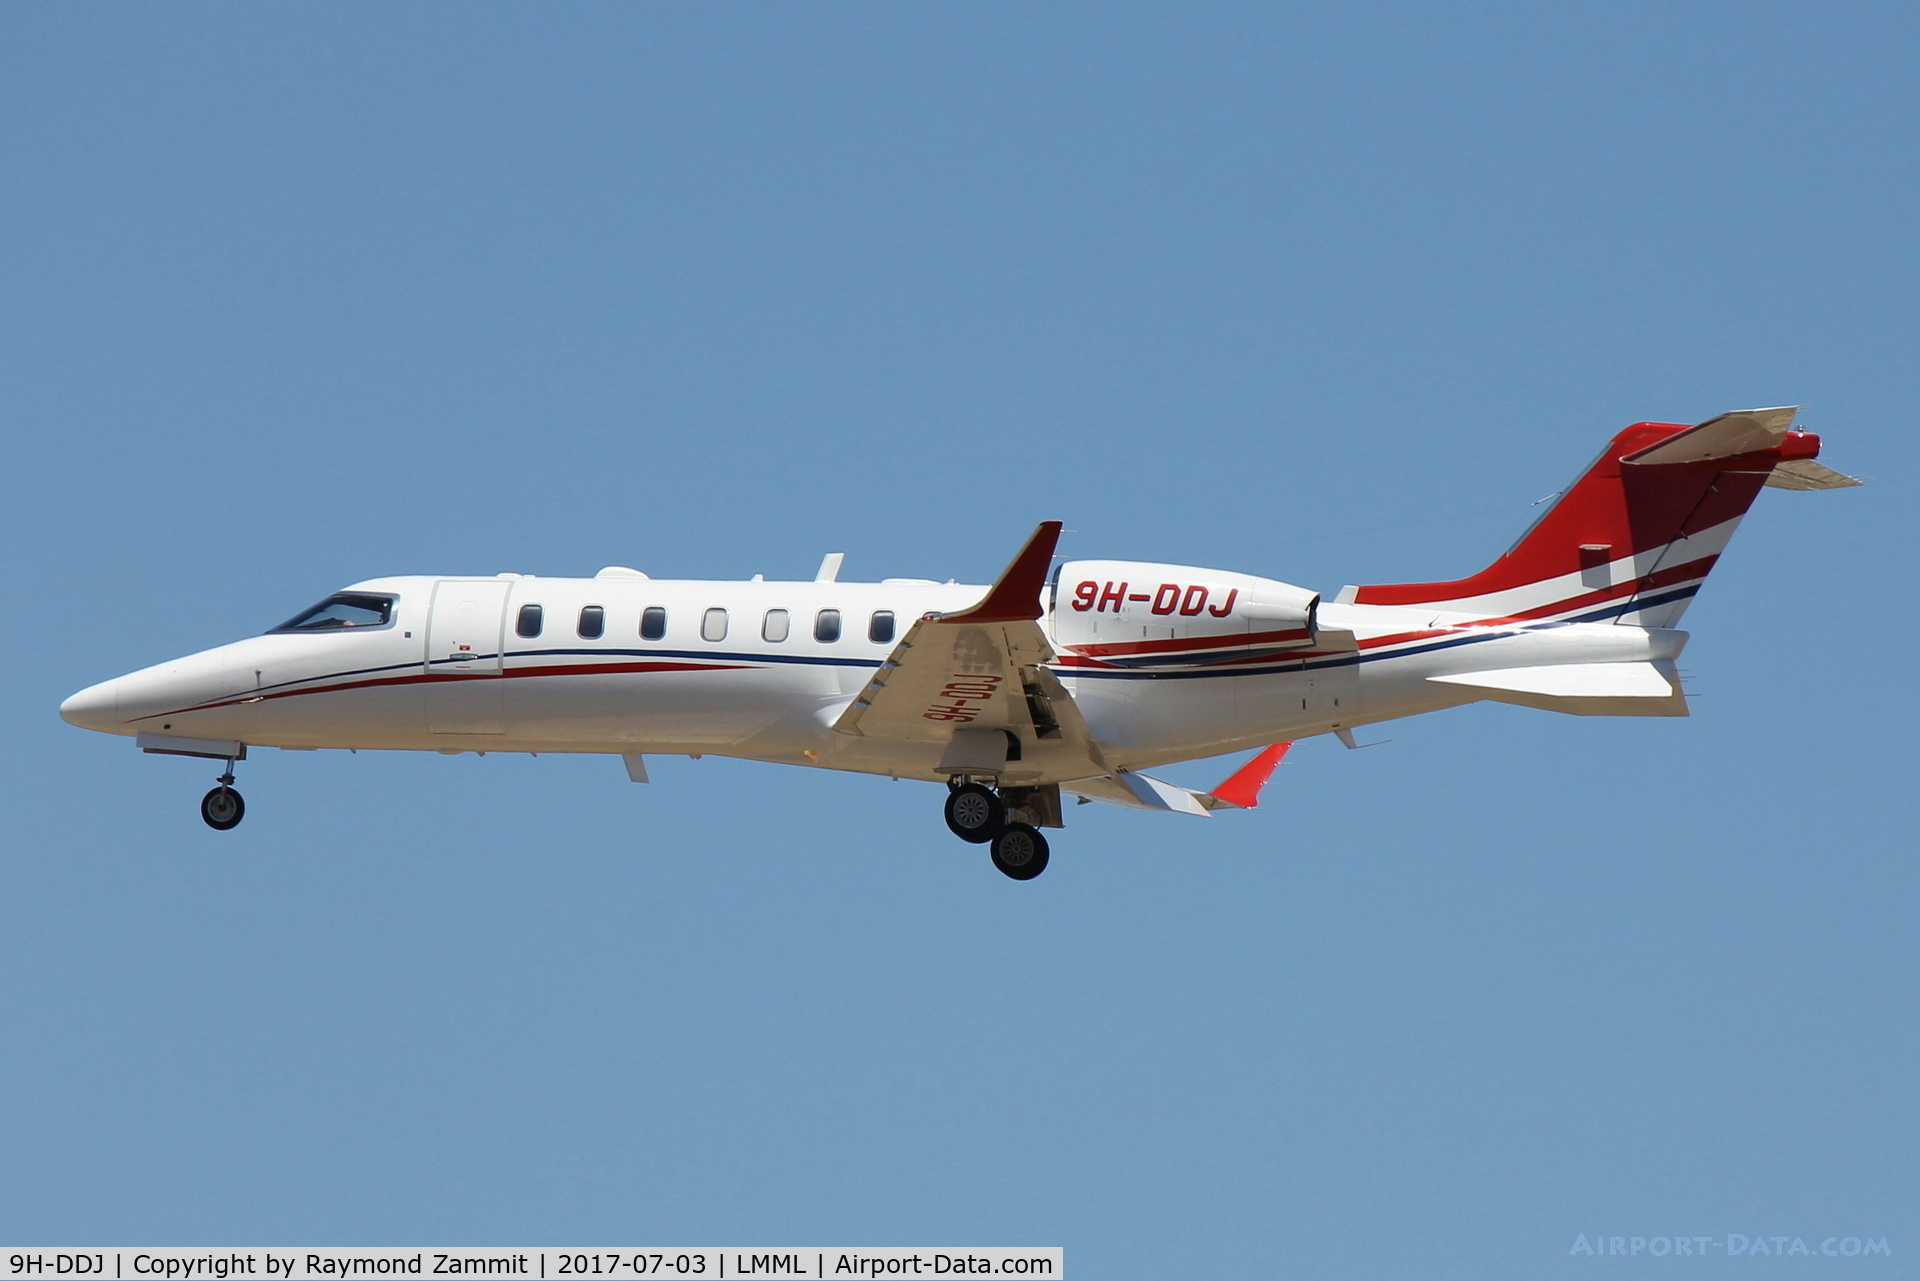 9H-DDJ, 2014 Learjet 75 C/N 45-494, Learjet75 9H-DDJ